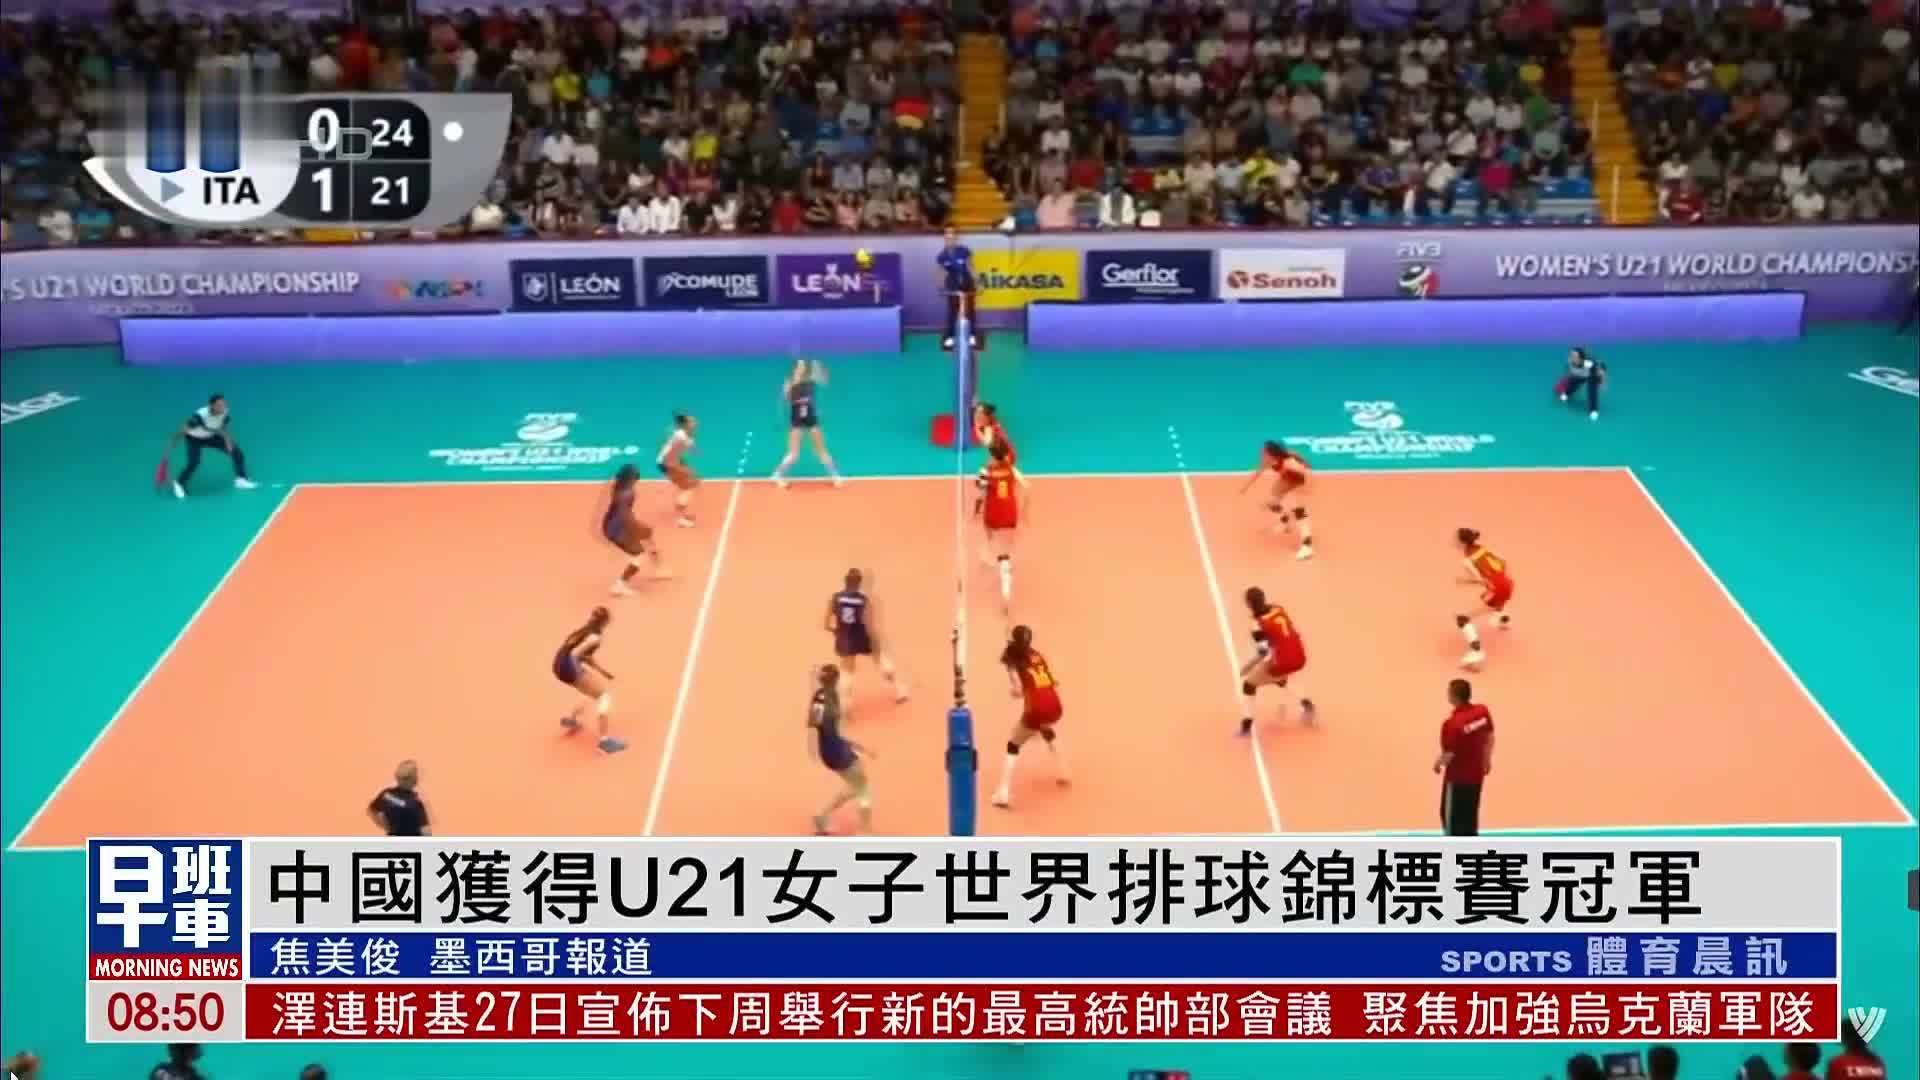 中国获得U21女子世界排球锦标赛冠军